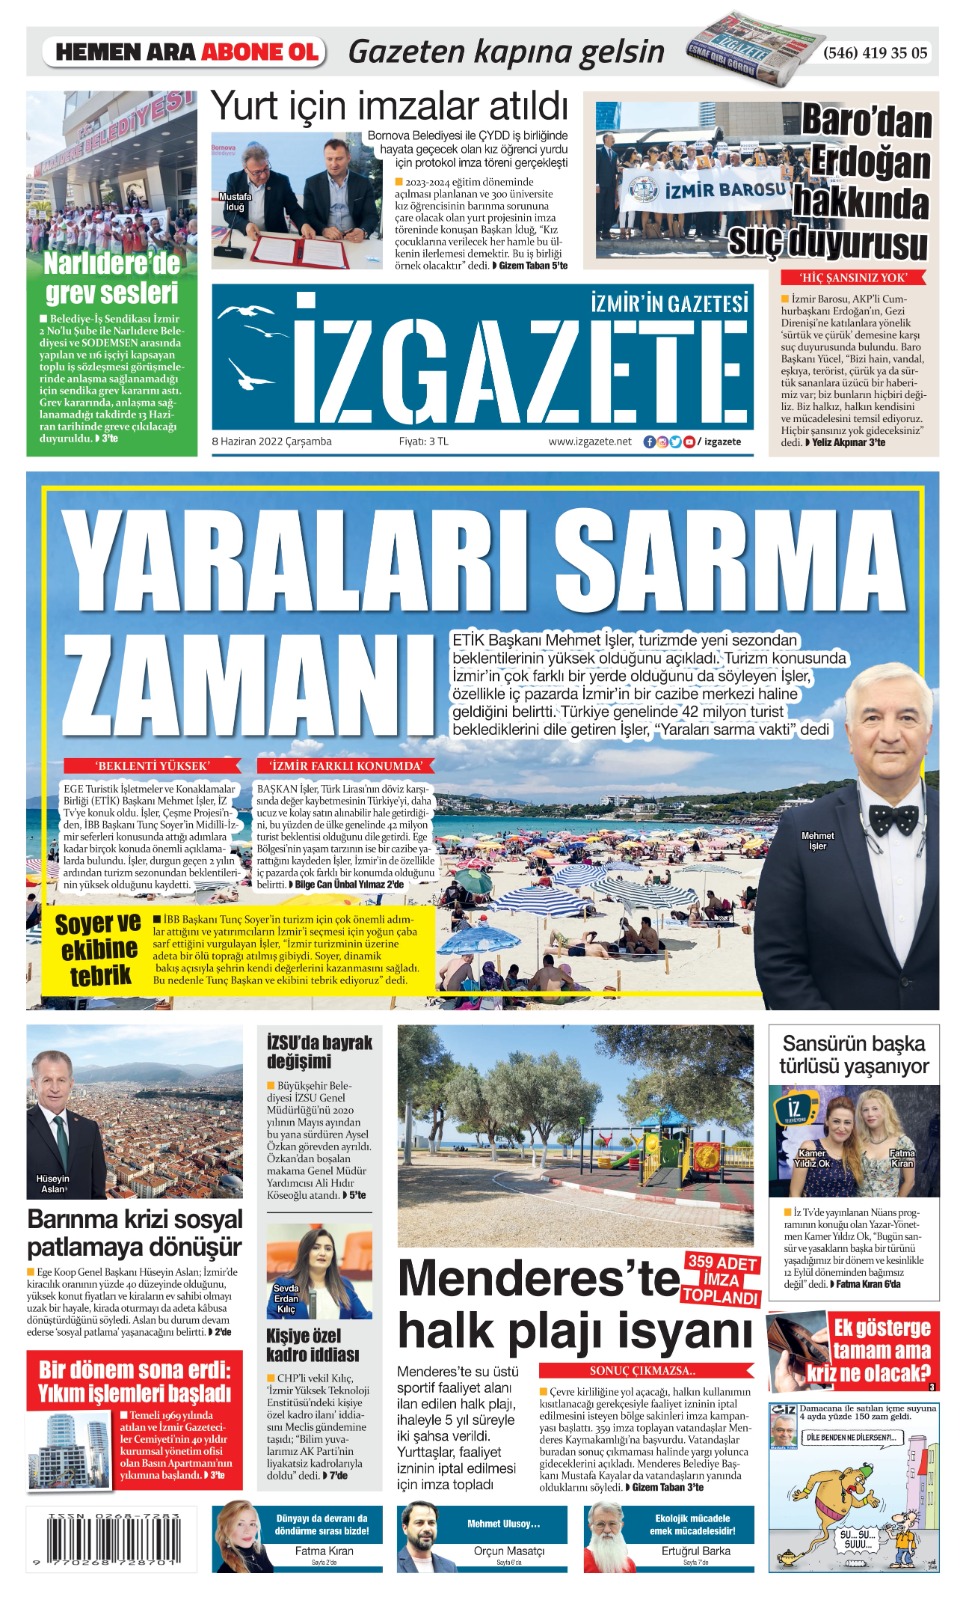 İz Gazete - İzmir'in Gazetesi - 08.06.2022 Manşeti